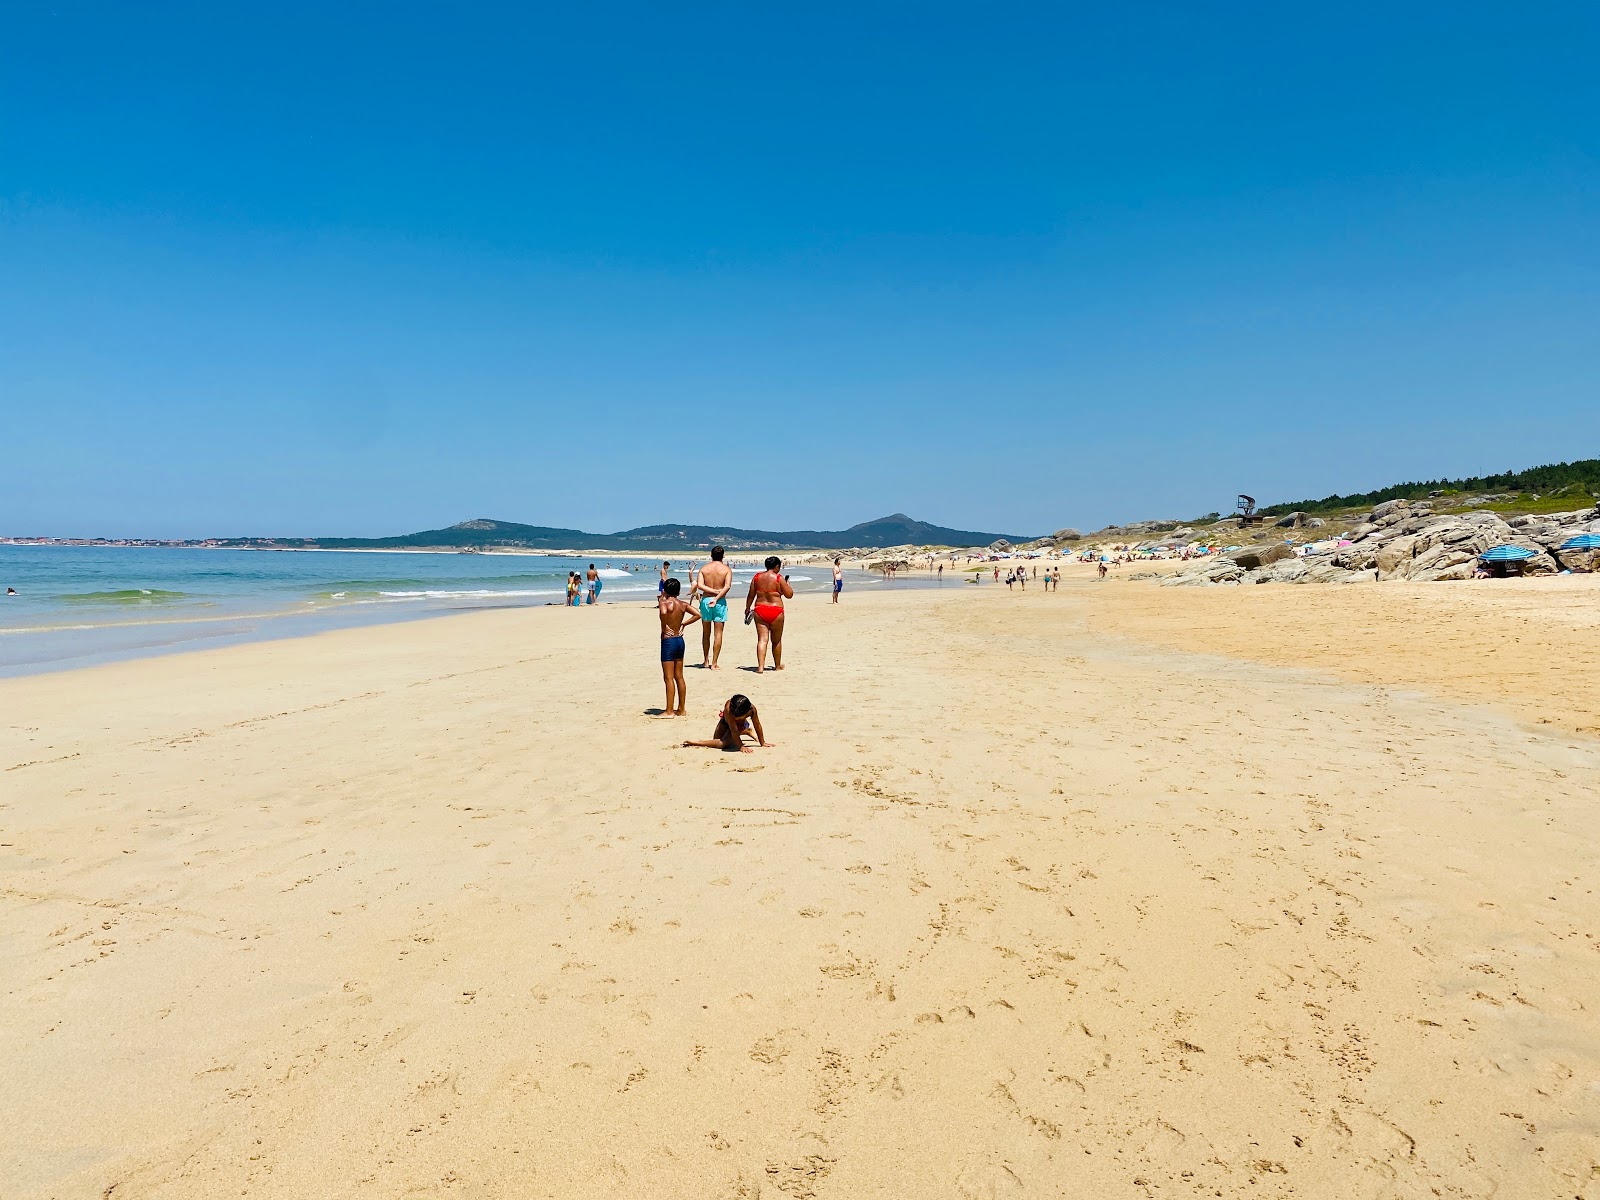 Fotografie cu Vilar beach - locul popular printre cunoscătorii de relaxare